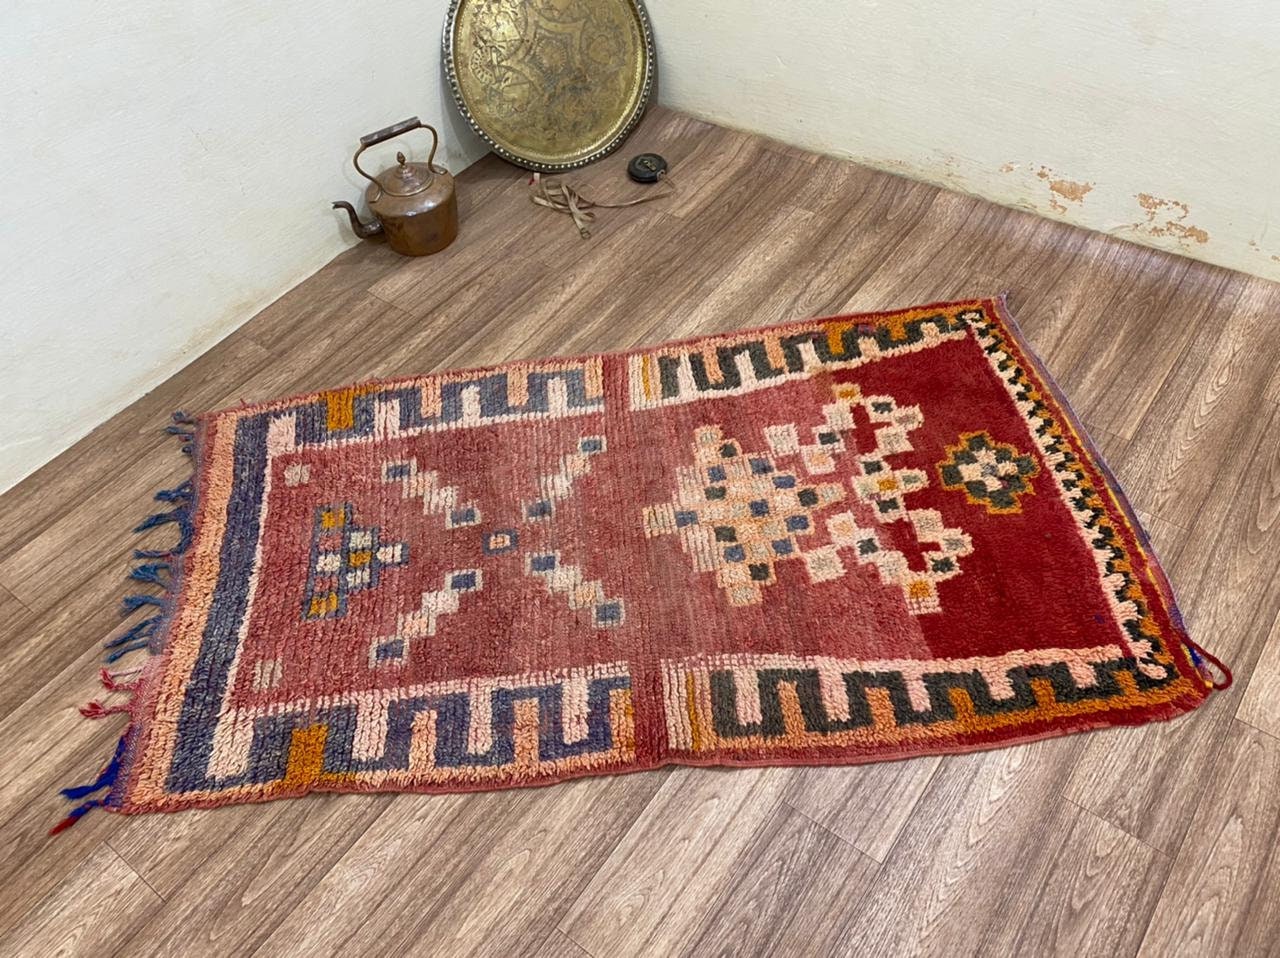 3x6 ft vintage Moroccan Berber rug!